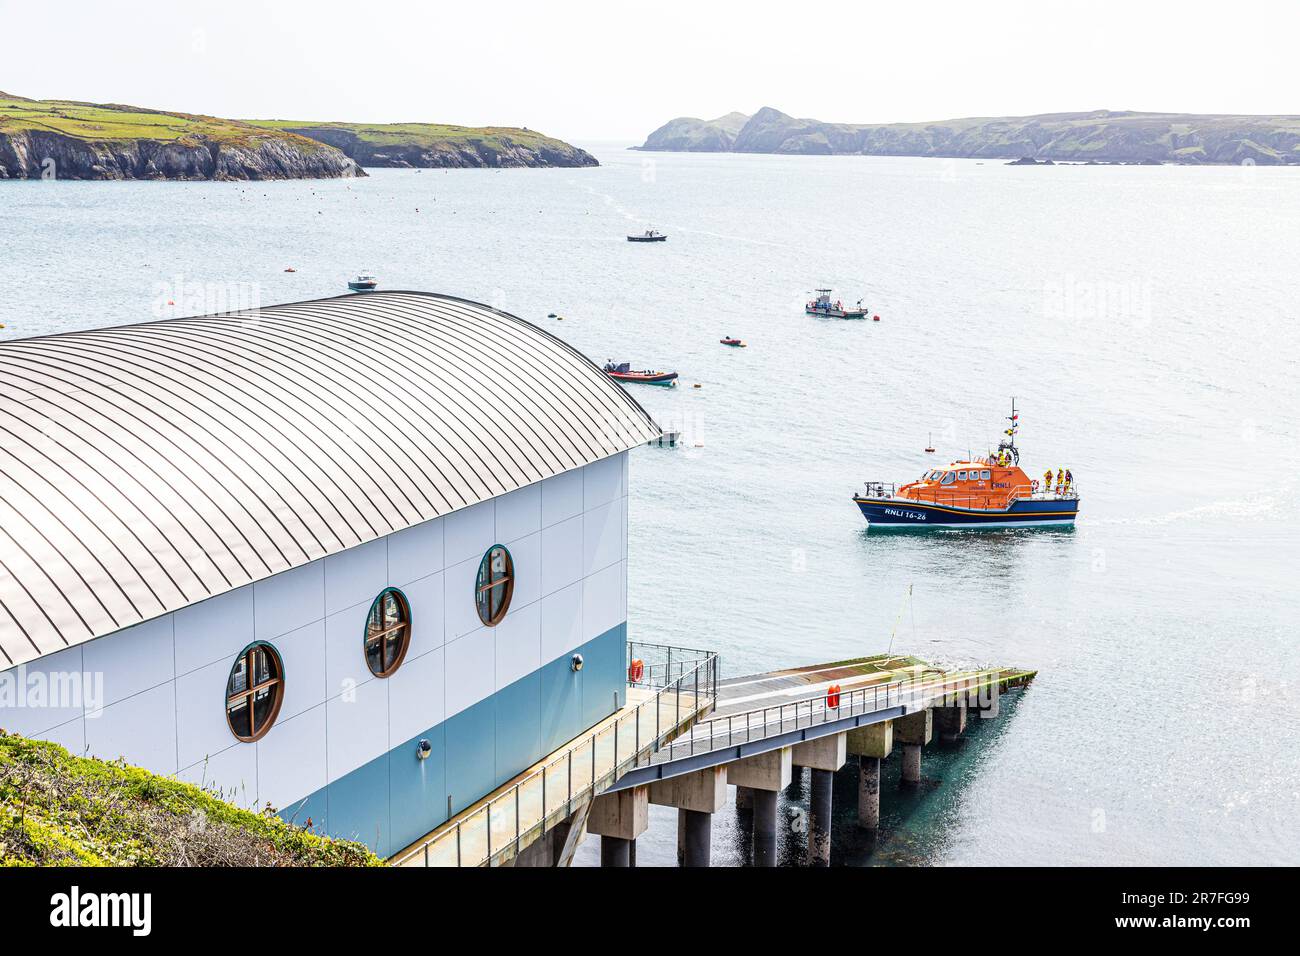 La scialuppa di salvataggio di classe Tamar RNLB Norah Wortley torna dopo un esercizio alla nuova stazione di scialuppa di salvataggio a St Justinas, Pembrokeshire, Galles UK Foto Stock